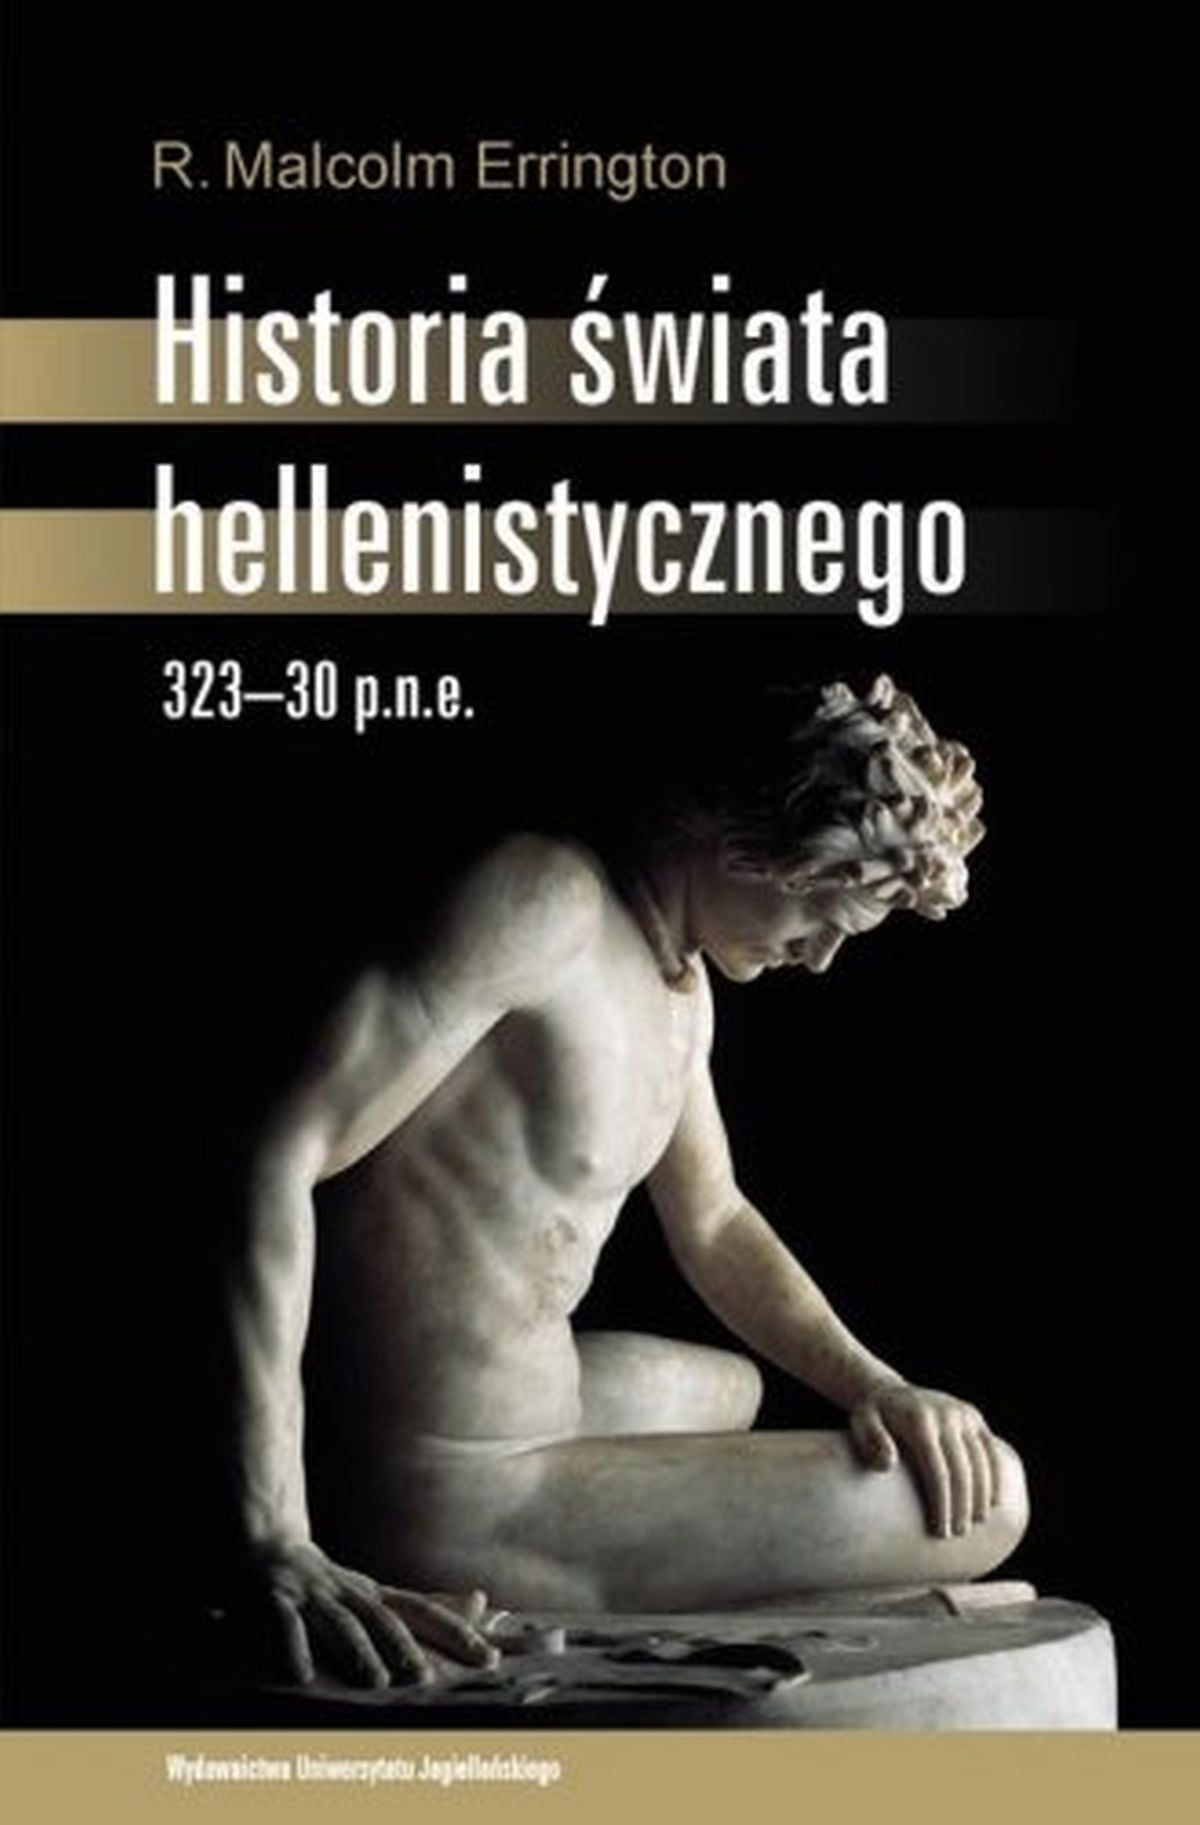 Historia świata hellenistycznego 323-30 p.n.e.